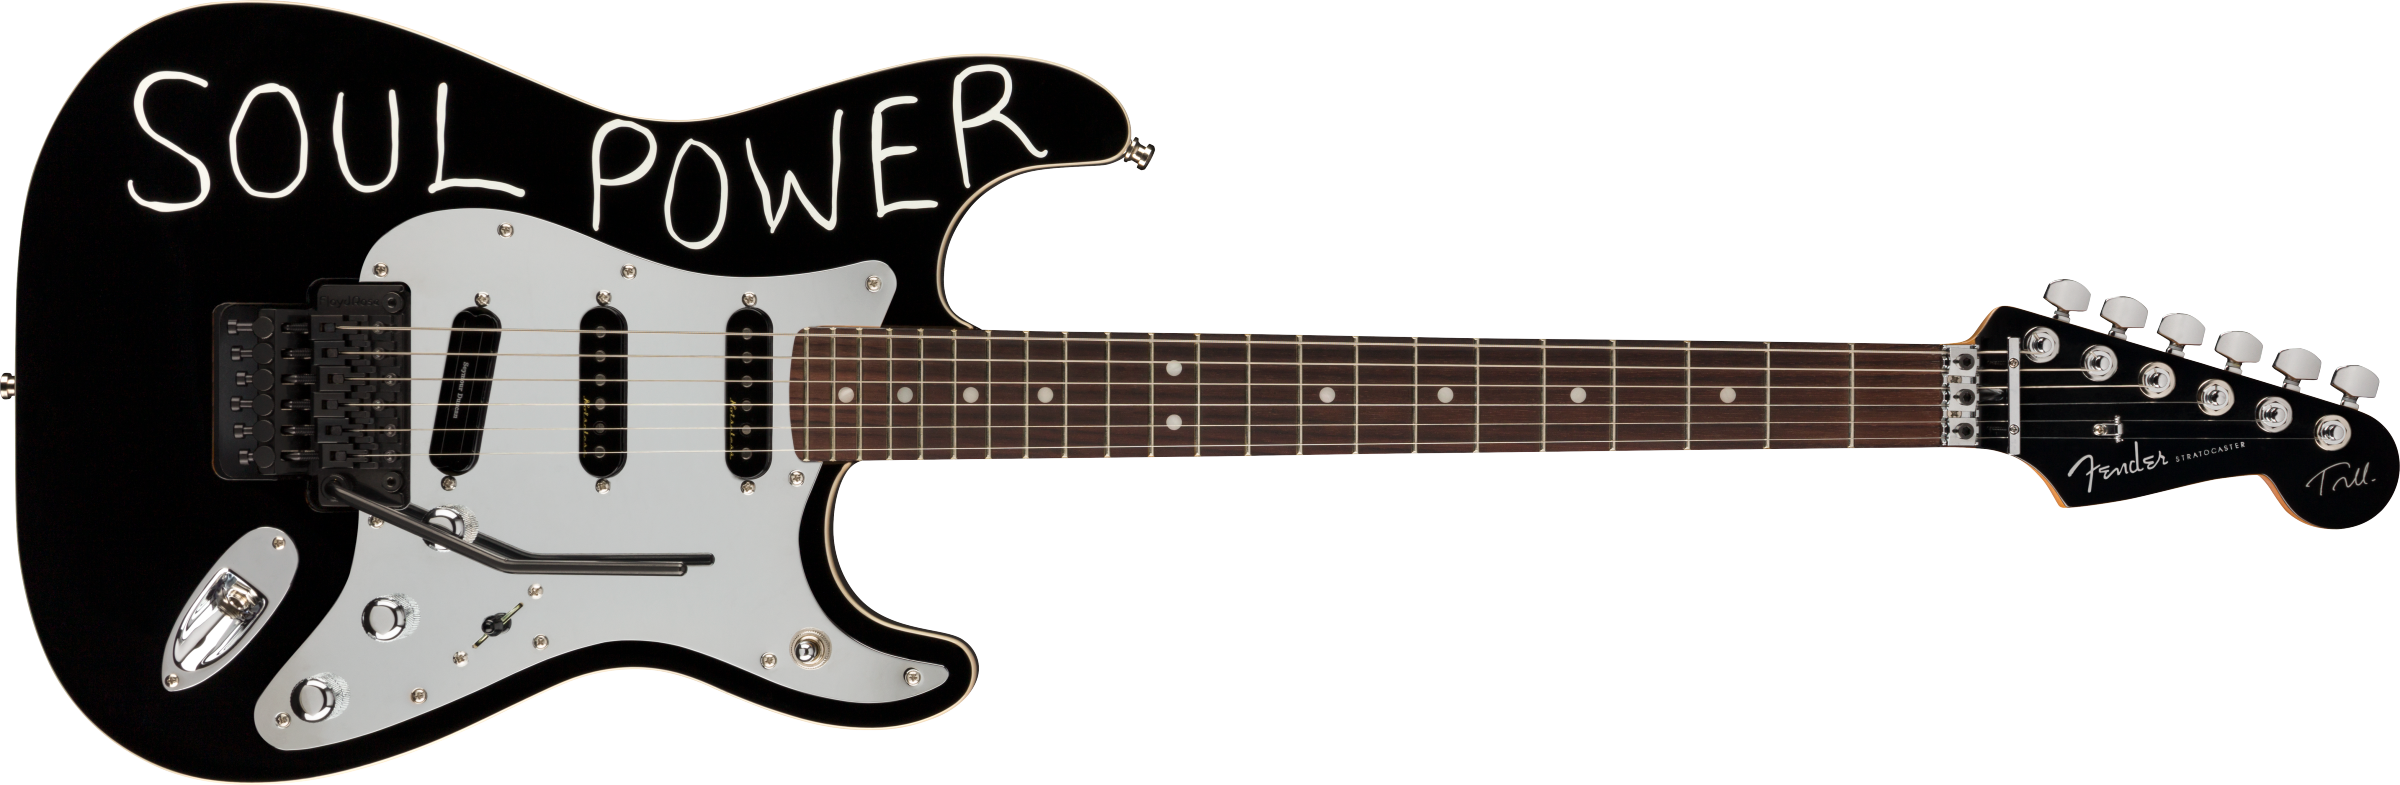 Fender Tom Morello Stratocaster®, Rosewood Fingerboard, Black